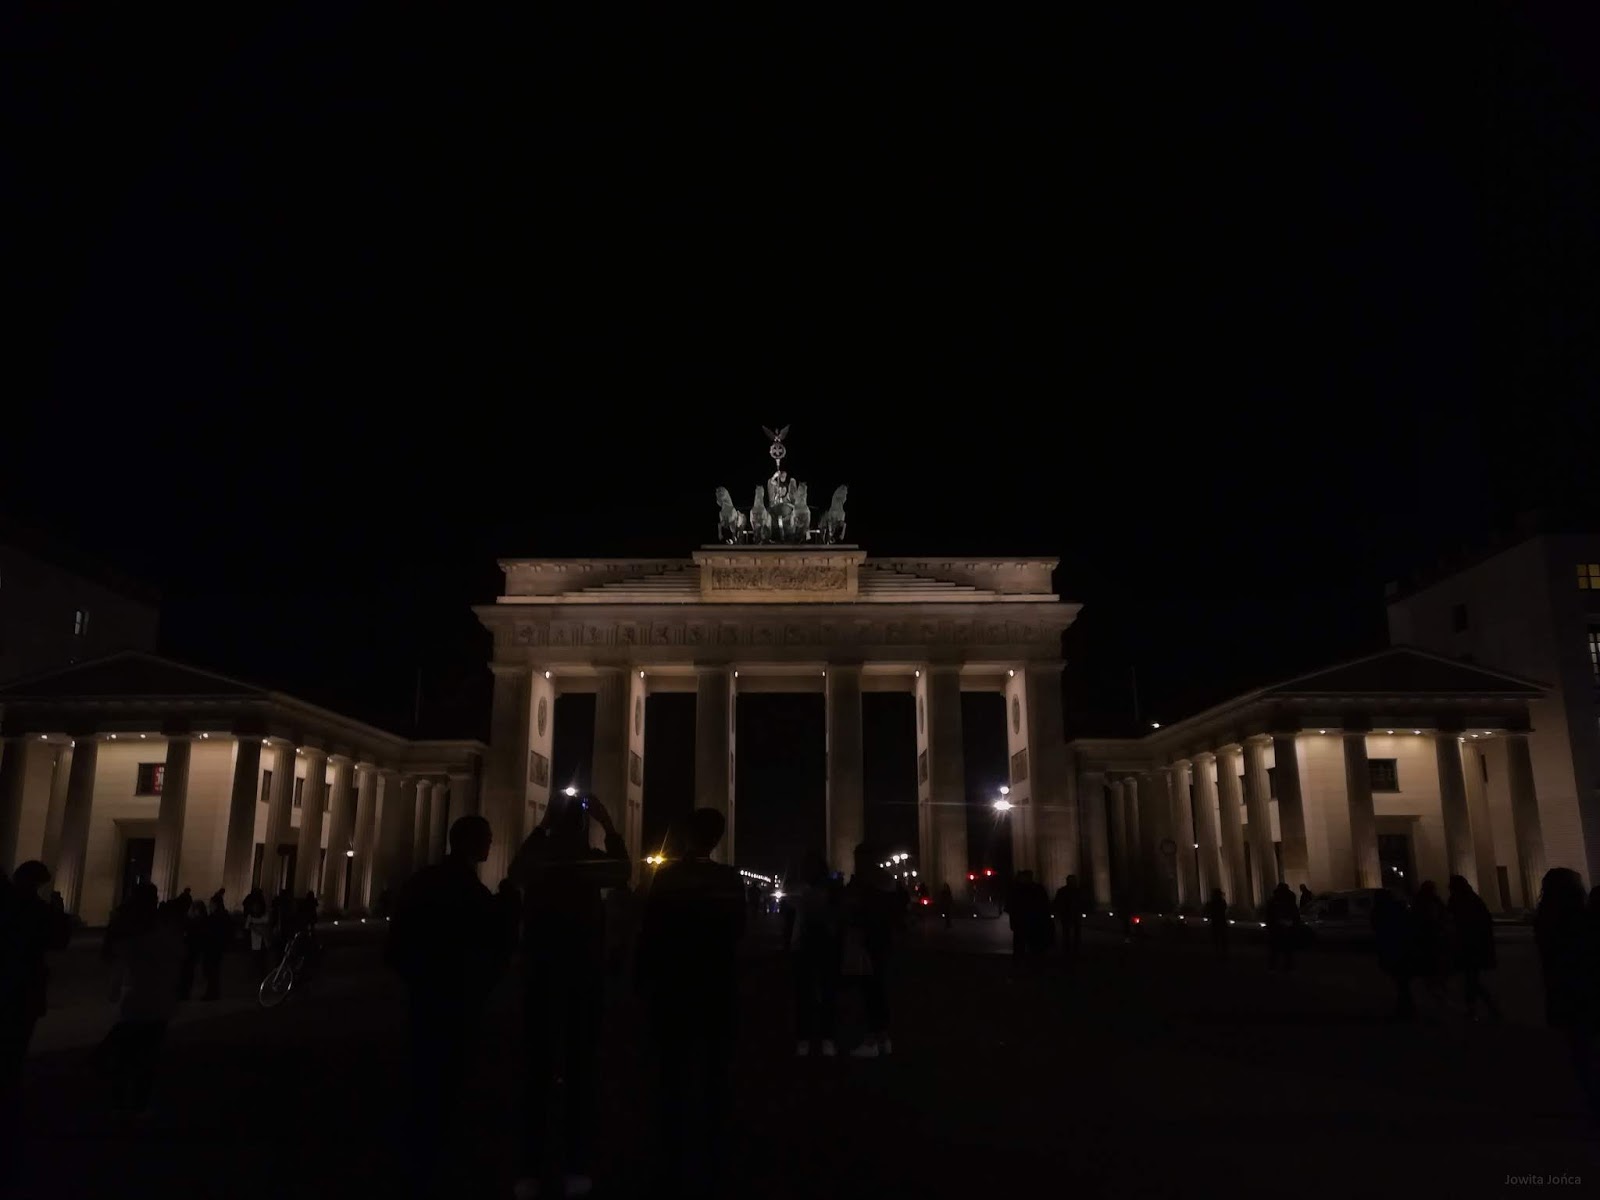 Berlin - pierwsze wrażenia - Jowita Jońca | Blog